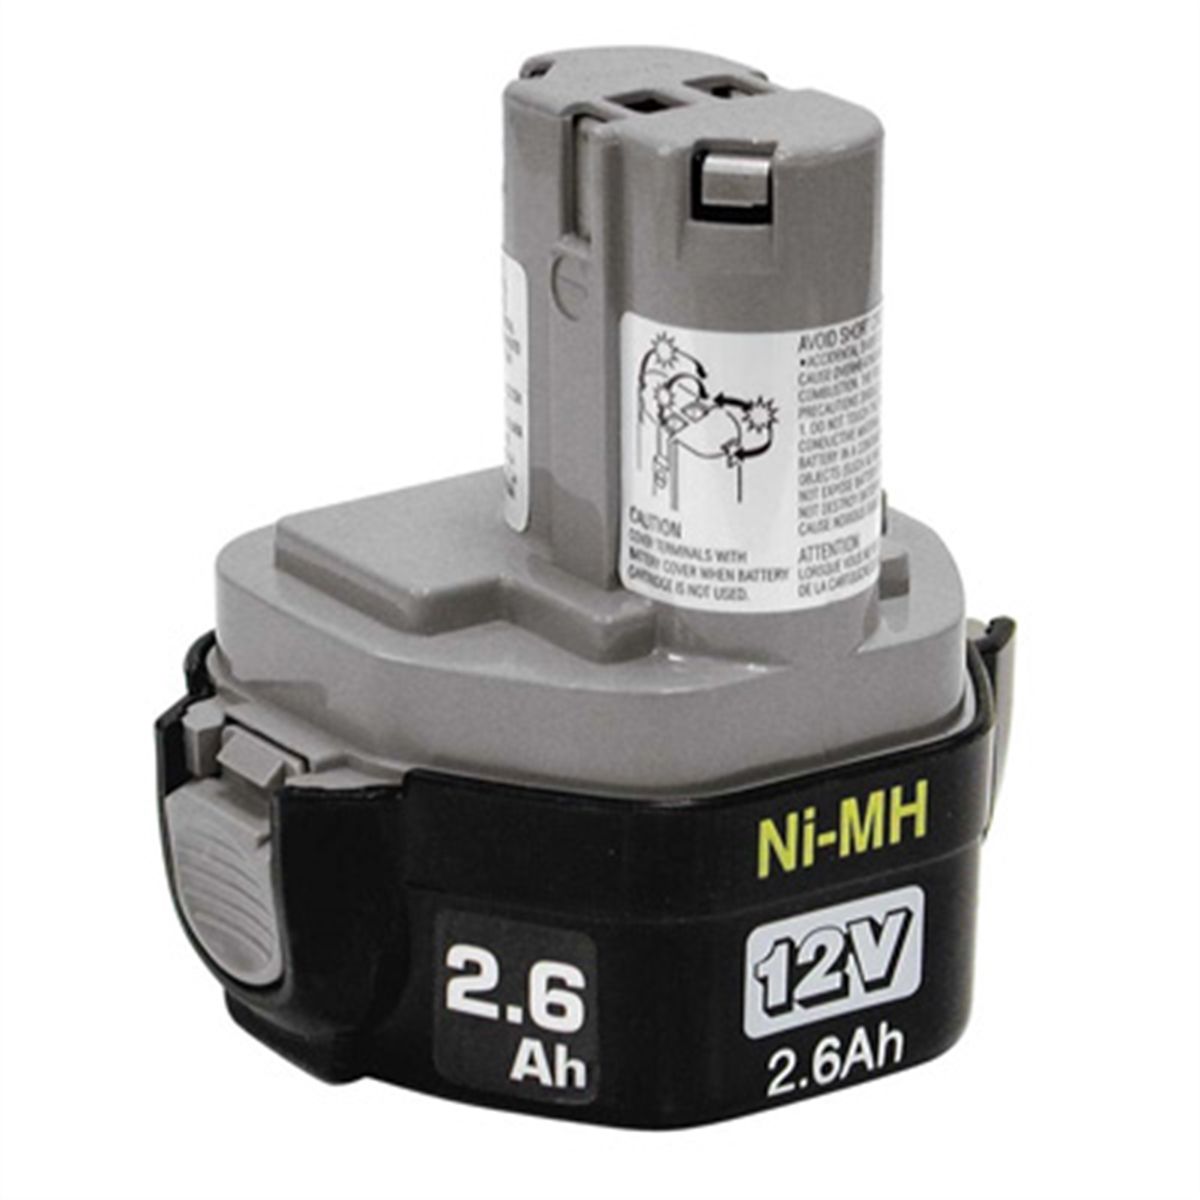 Nickel-Metal Hydride (Ni-MH) Battery 1234 - 12V (2.6 Ah